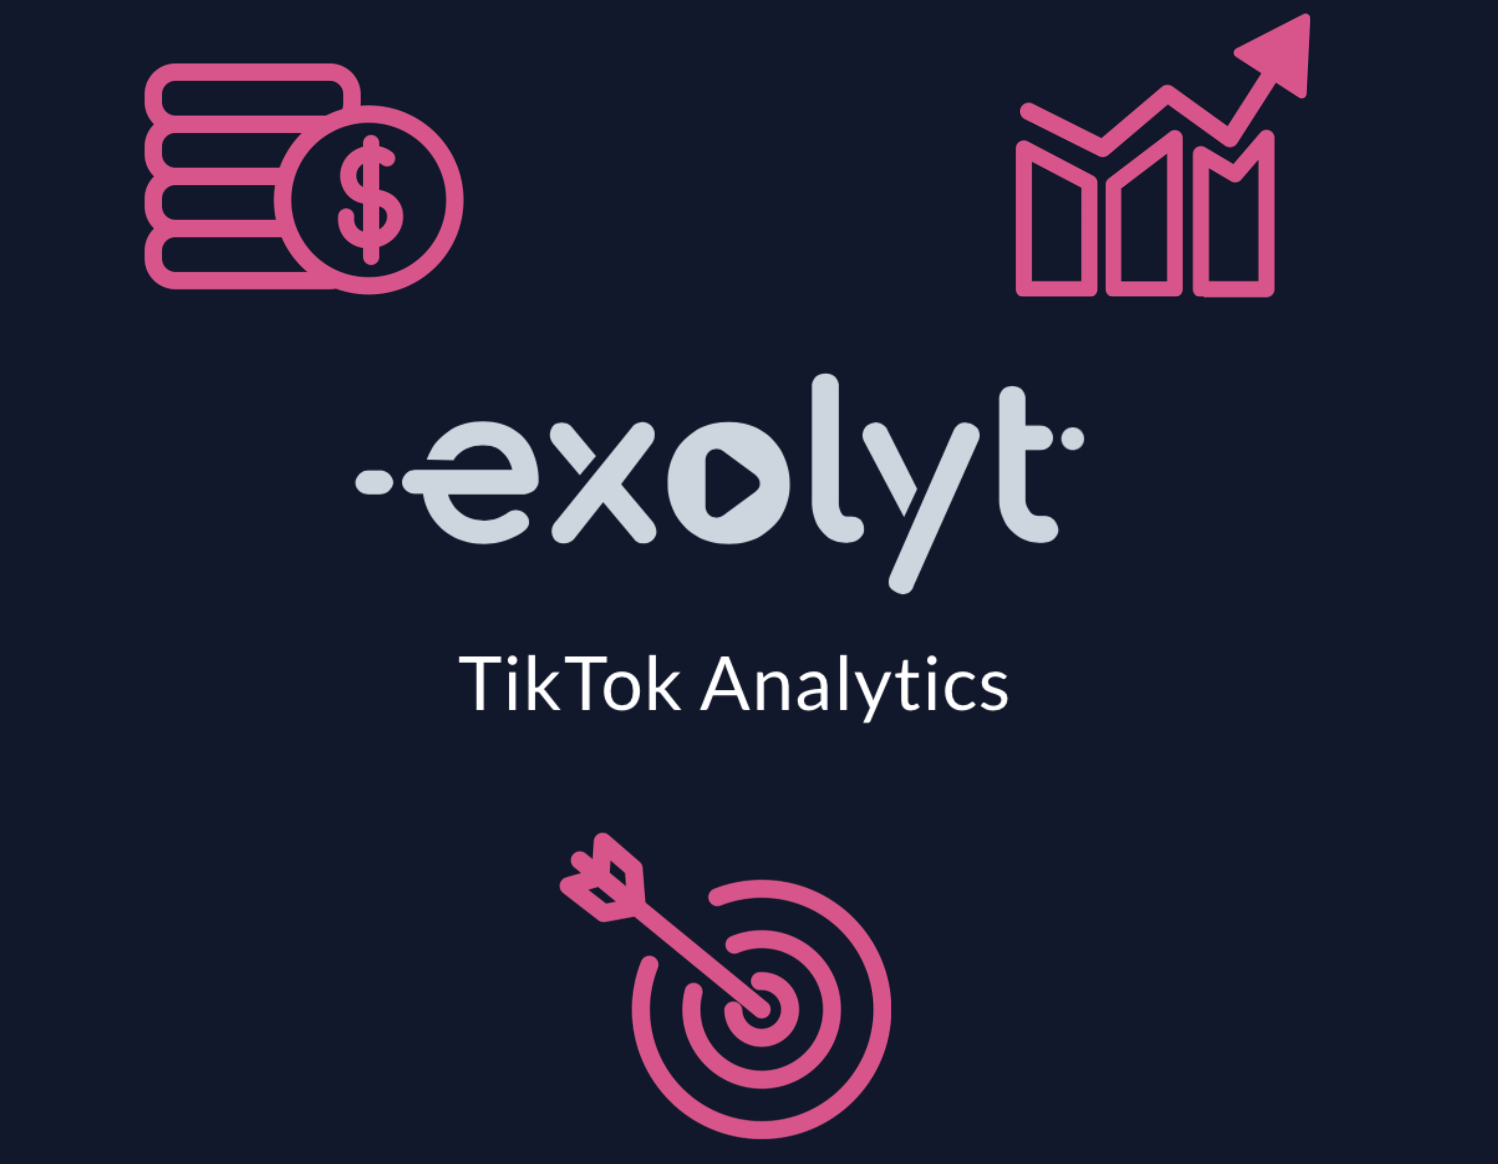 Por qué las agencias de medios deberían usar Exolyt para análisis de TikTok